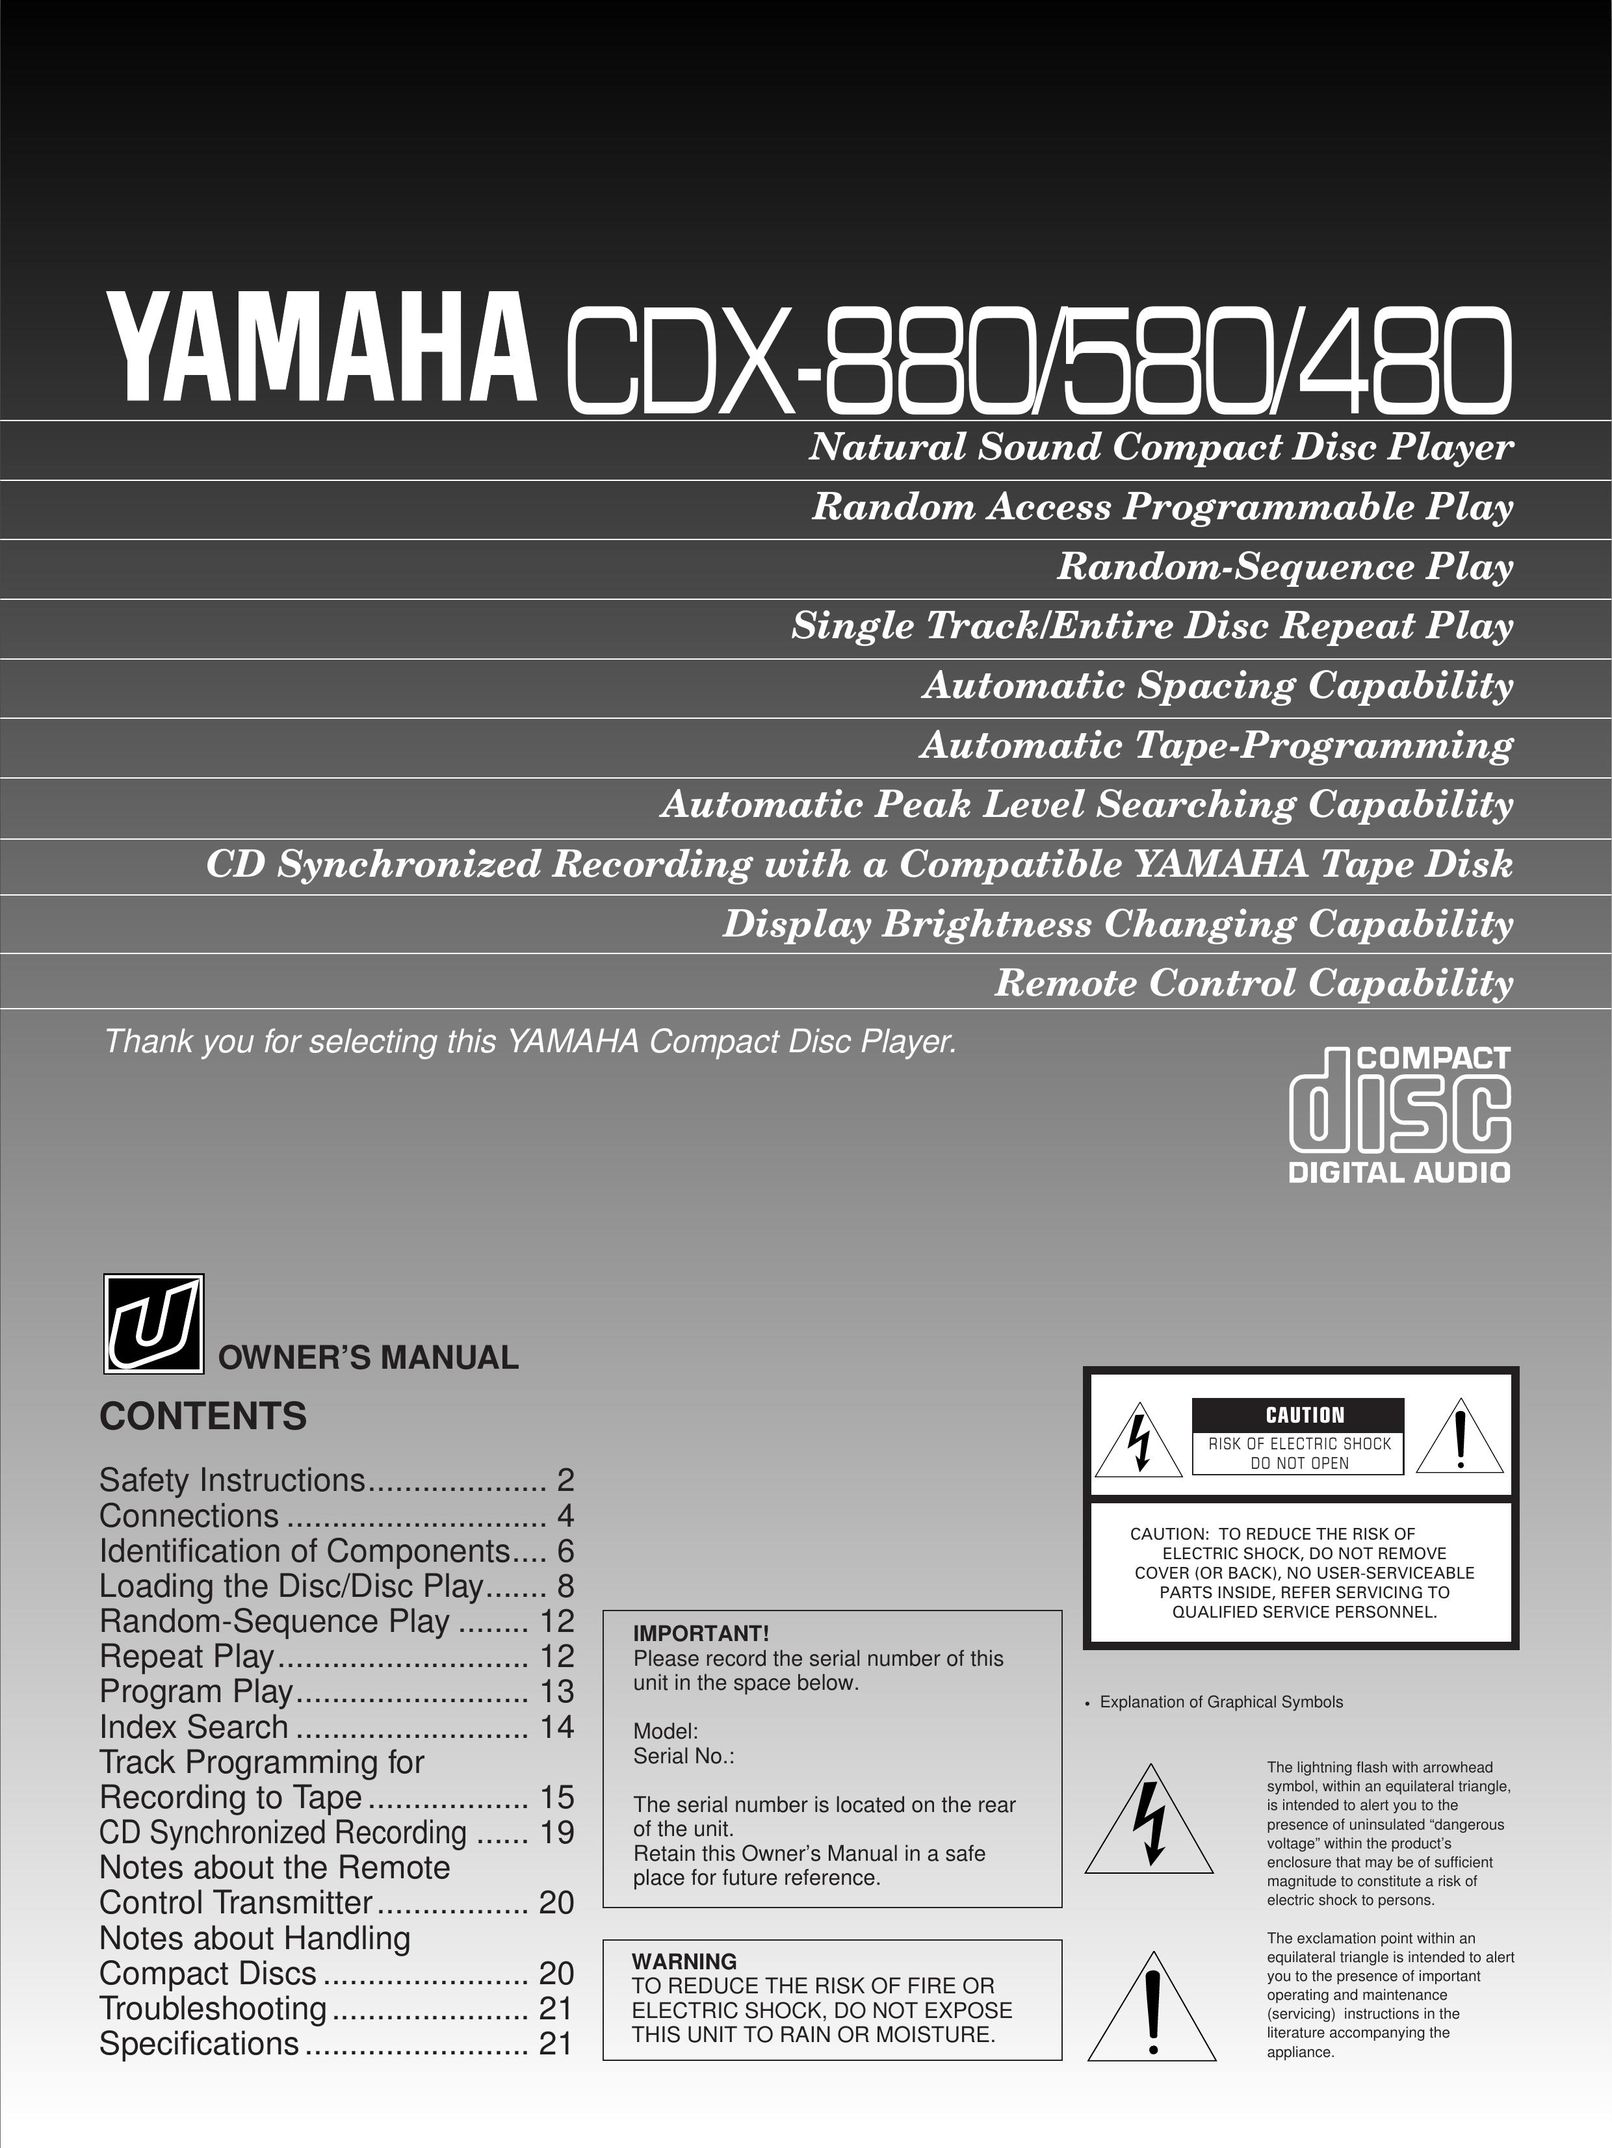 Yamaha CDX-580 CD Player User Manual